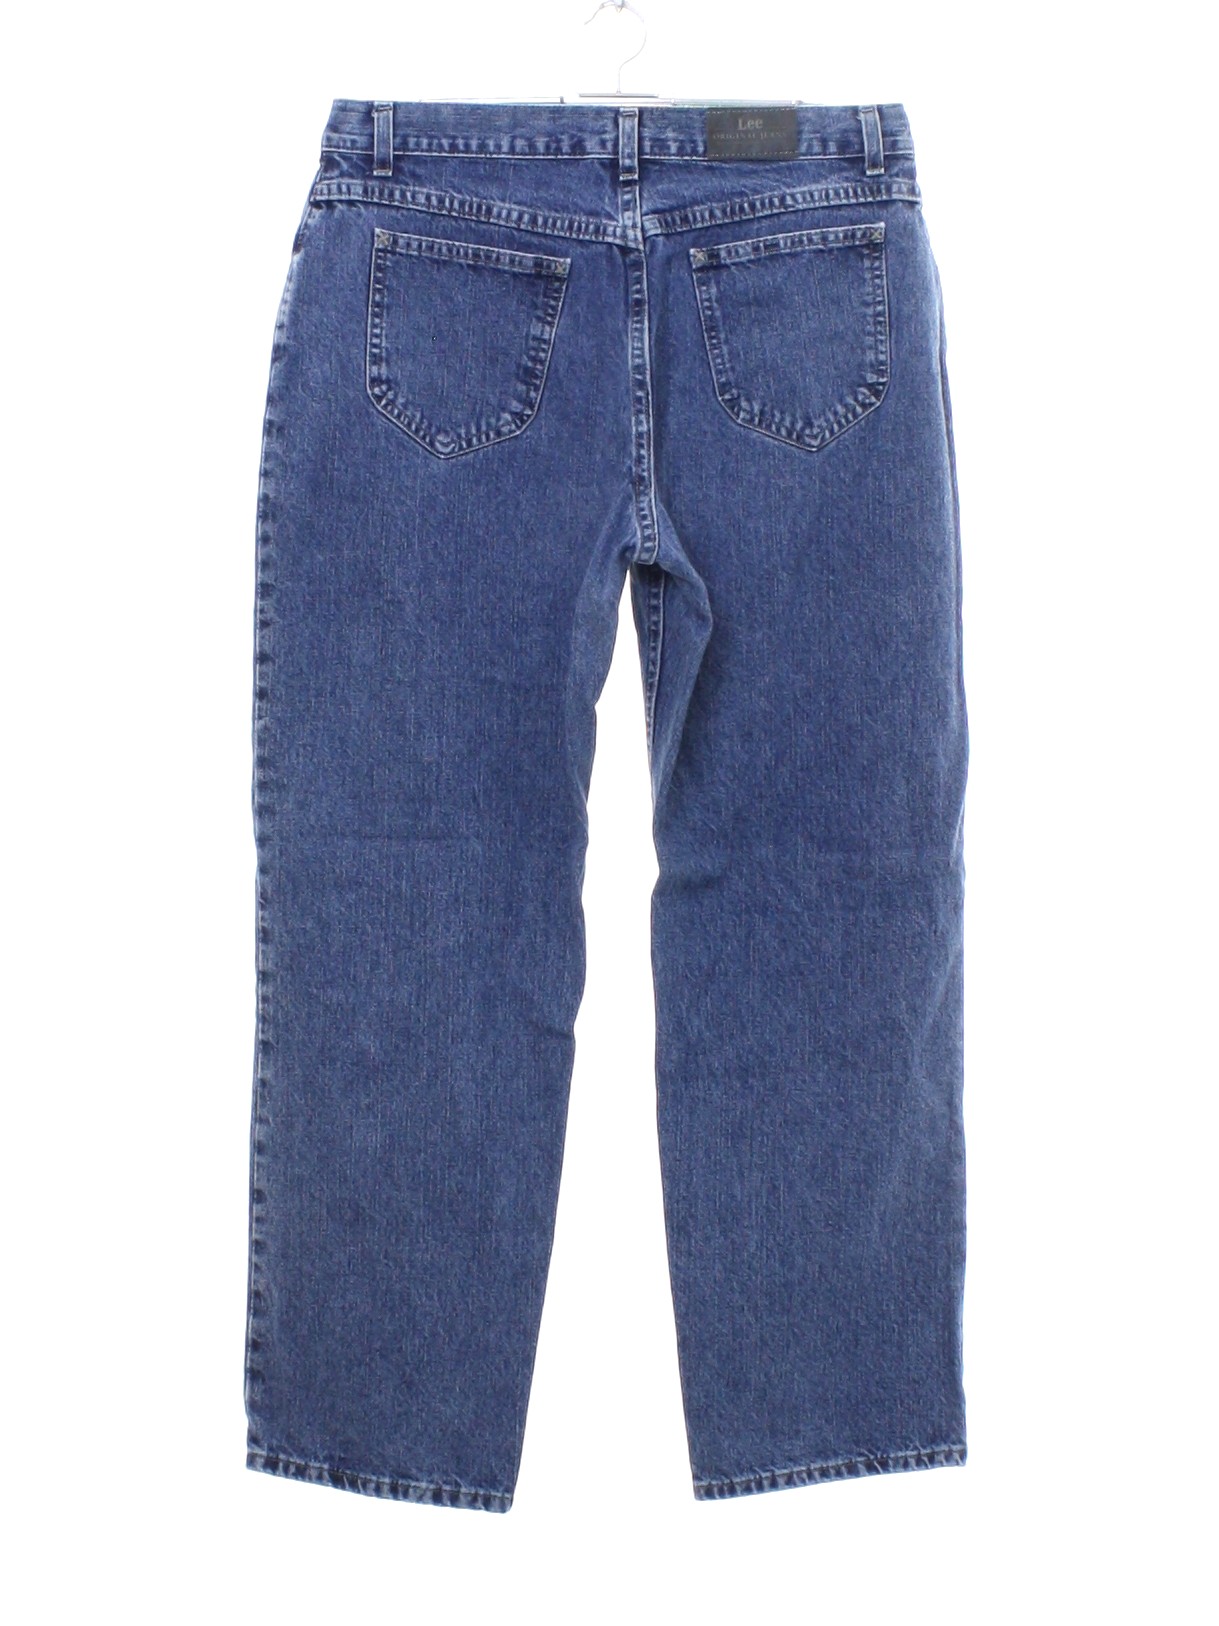 Vintage Lee Original Jeans 90's Pants: 90s or newer -Lee Original Jeans ...